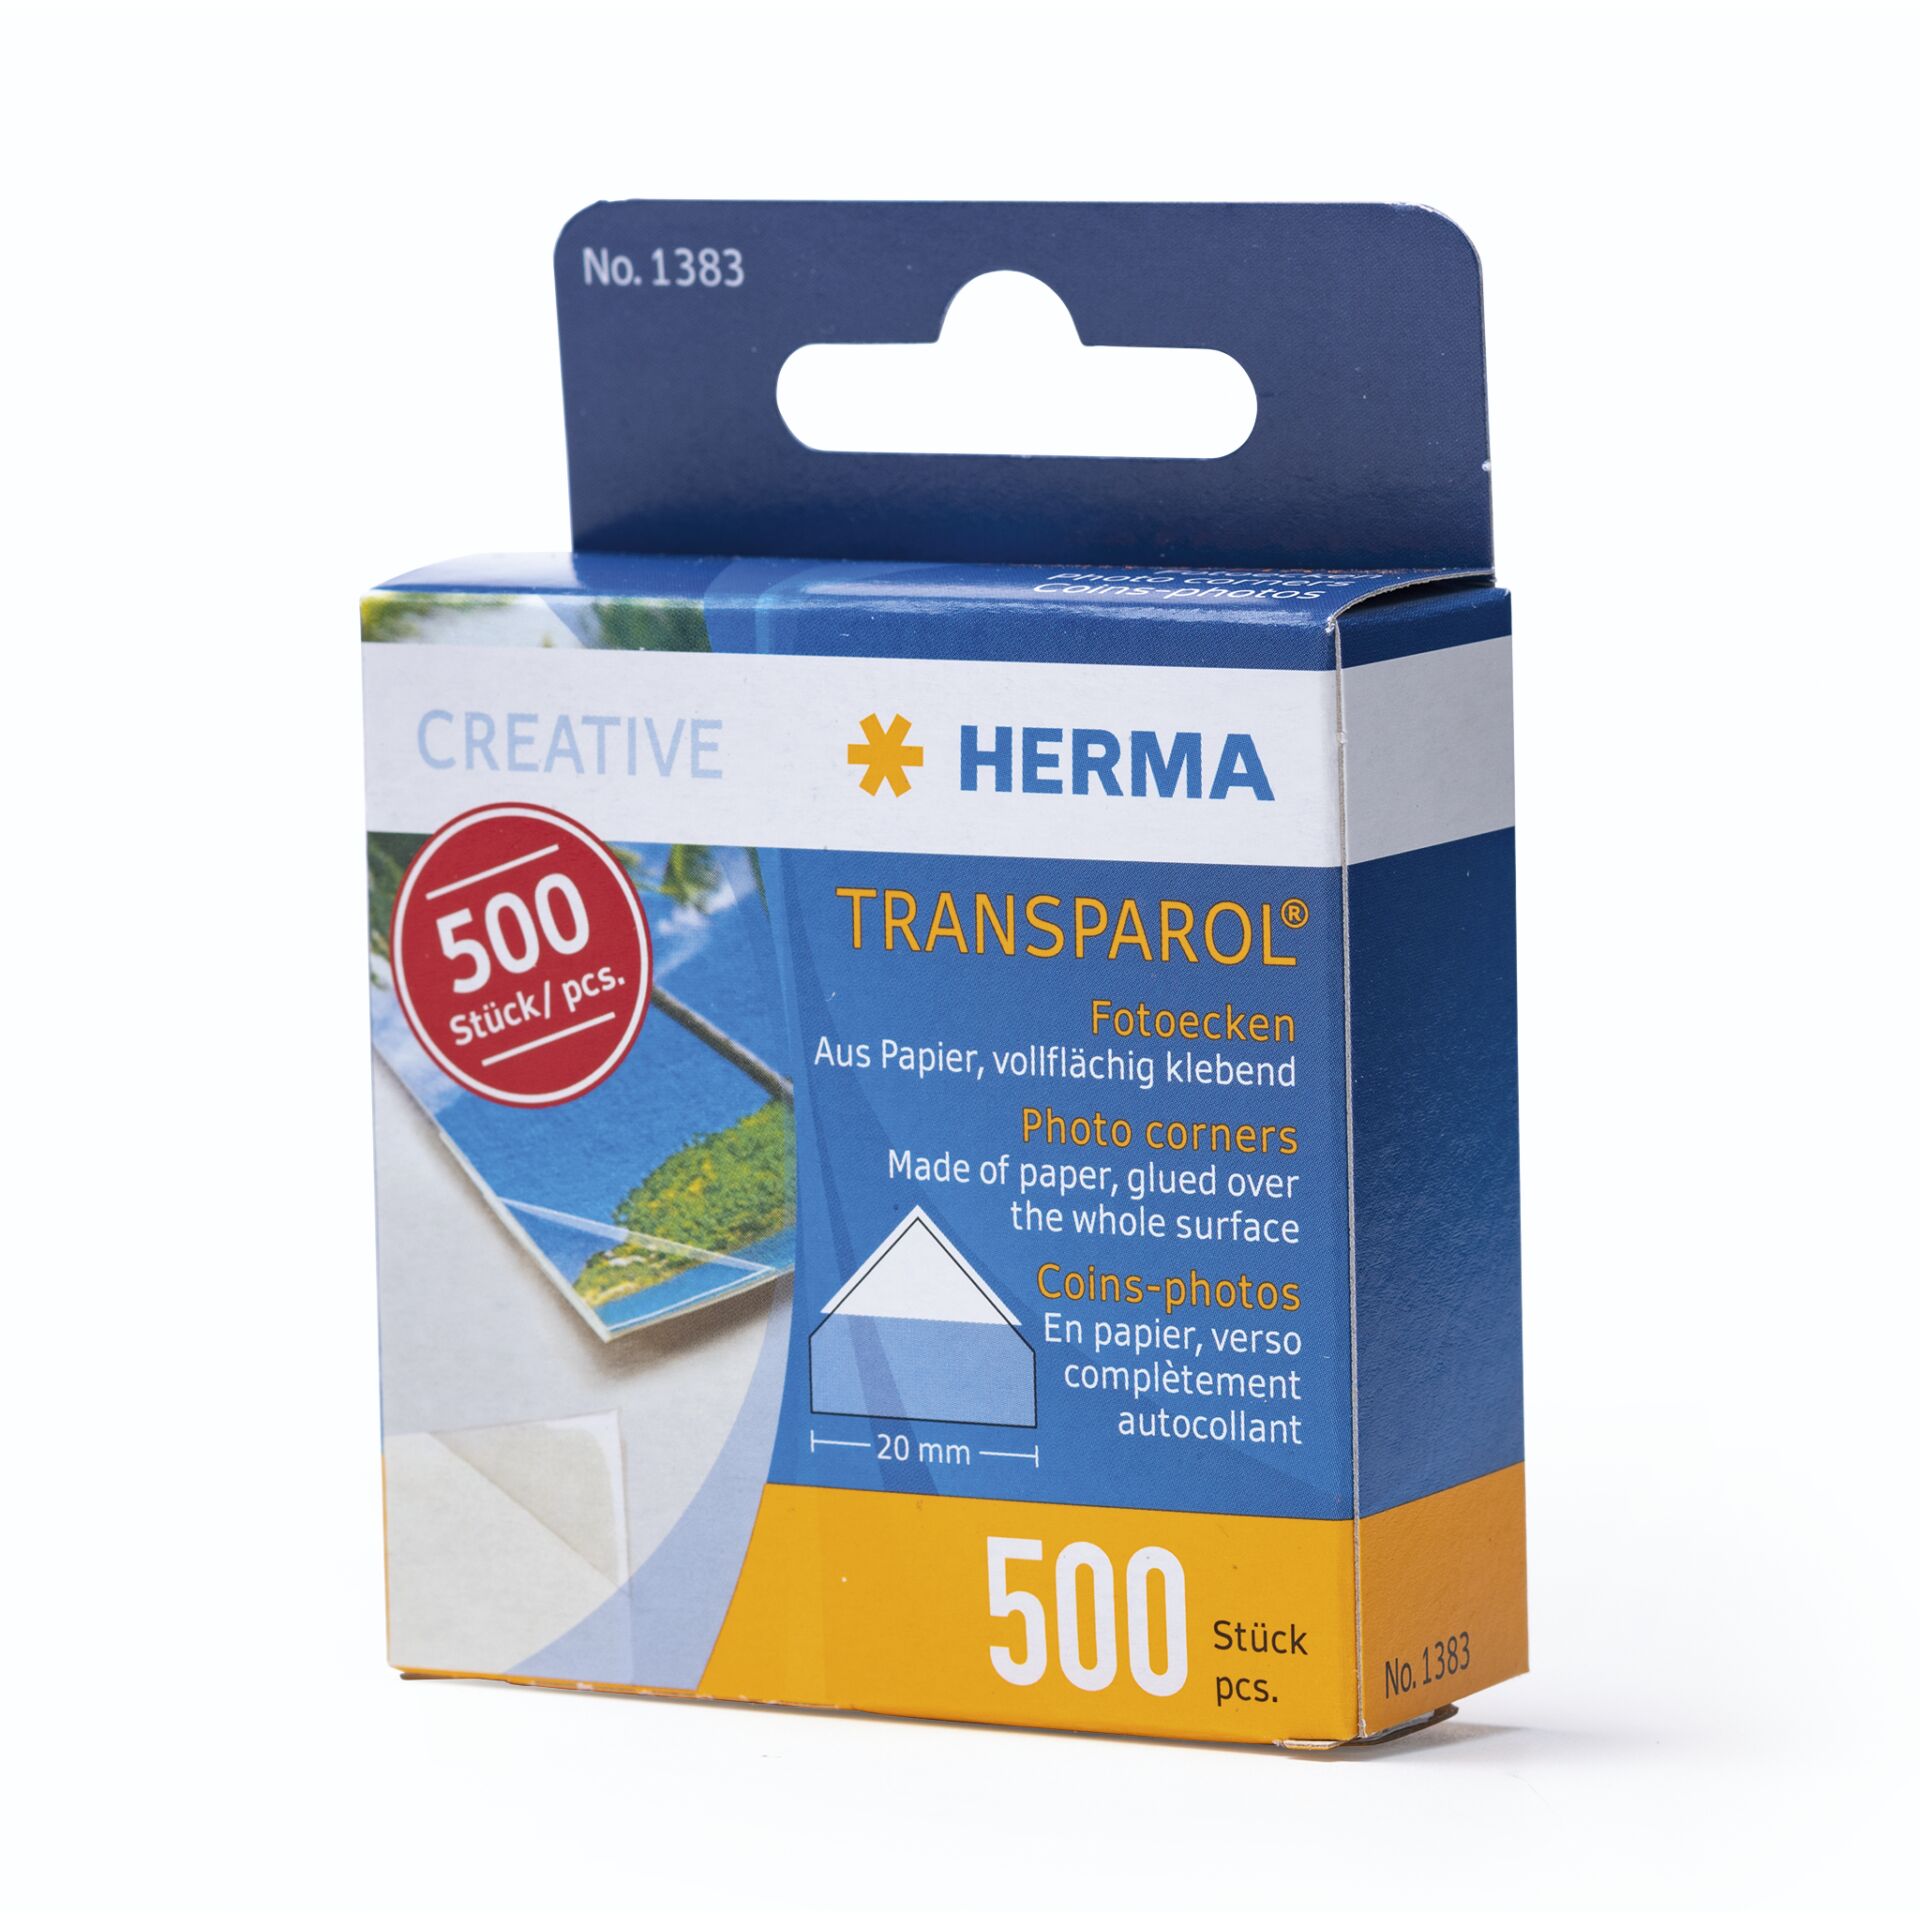 HERMA Transparol Fotoecken Spendepackung 500 St. 